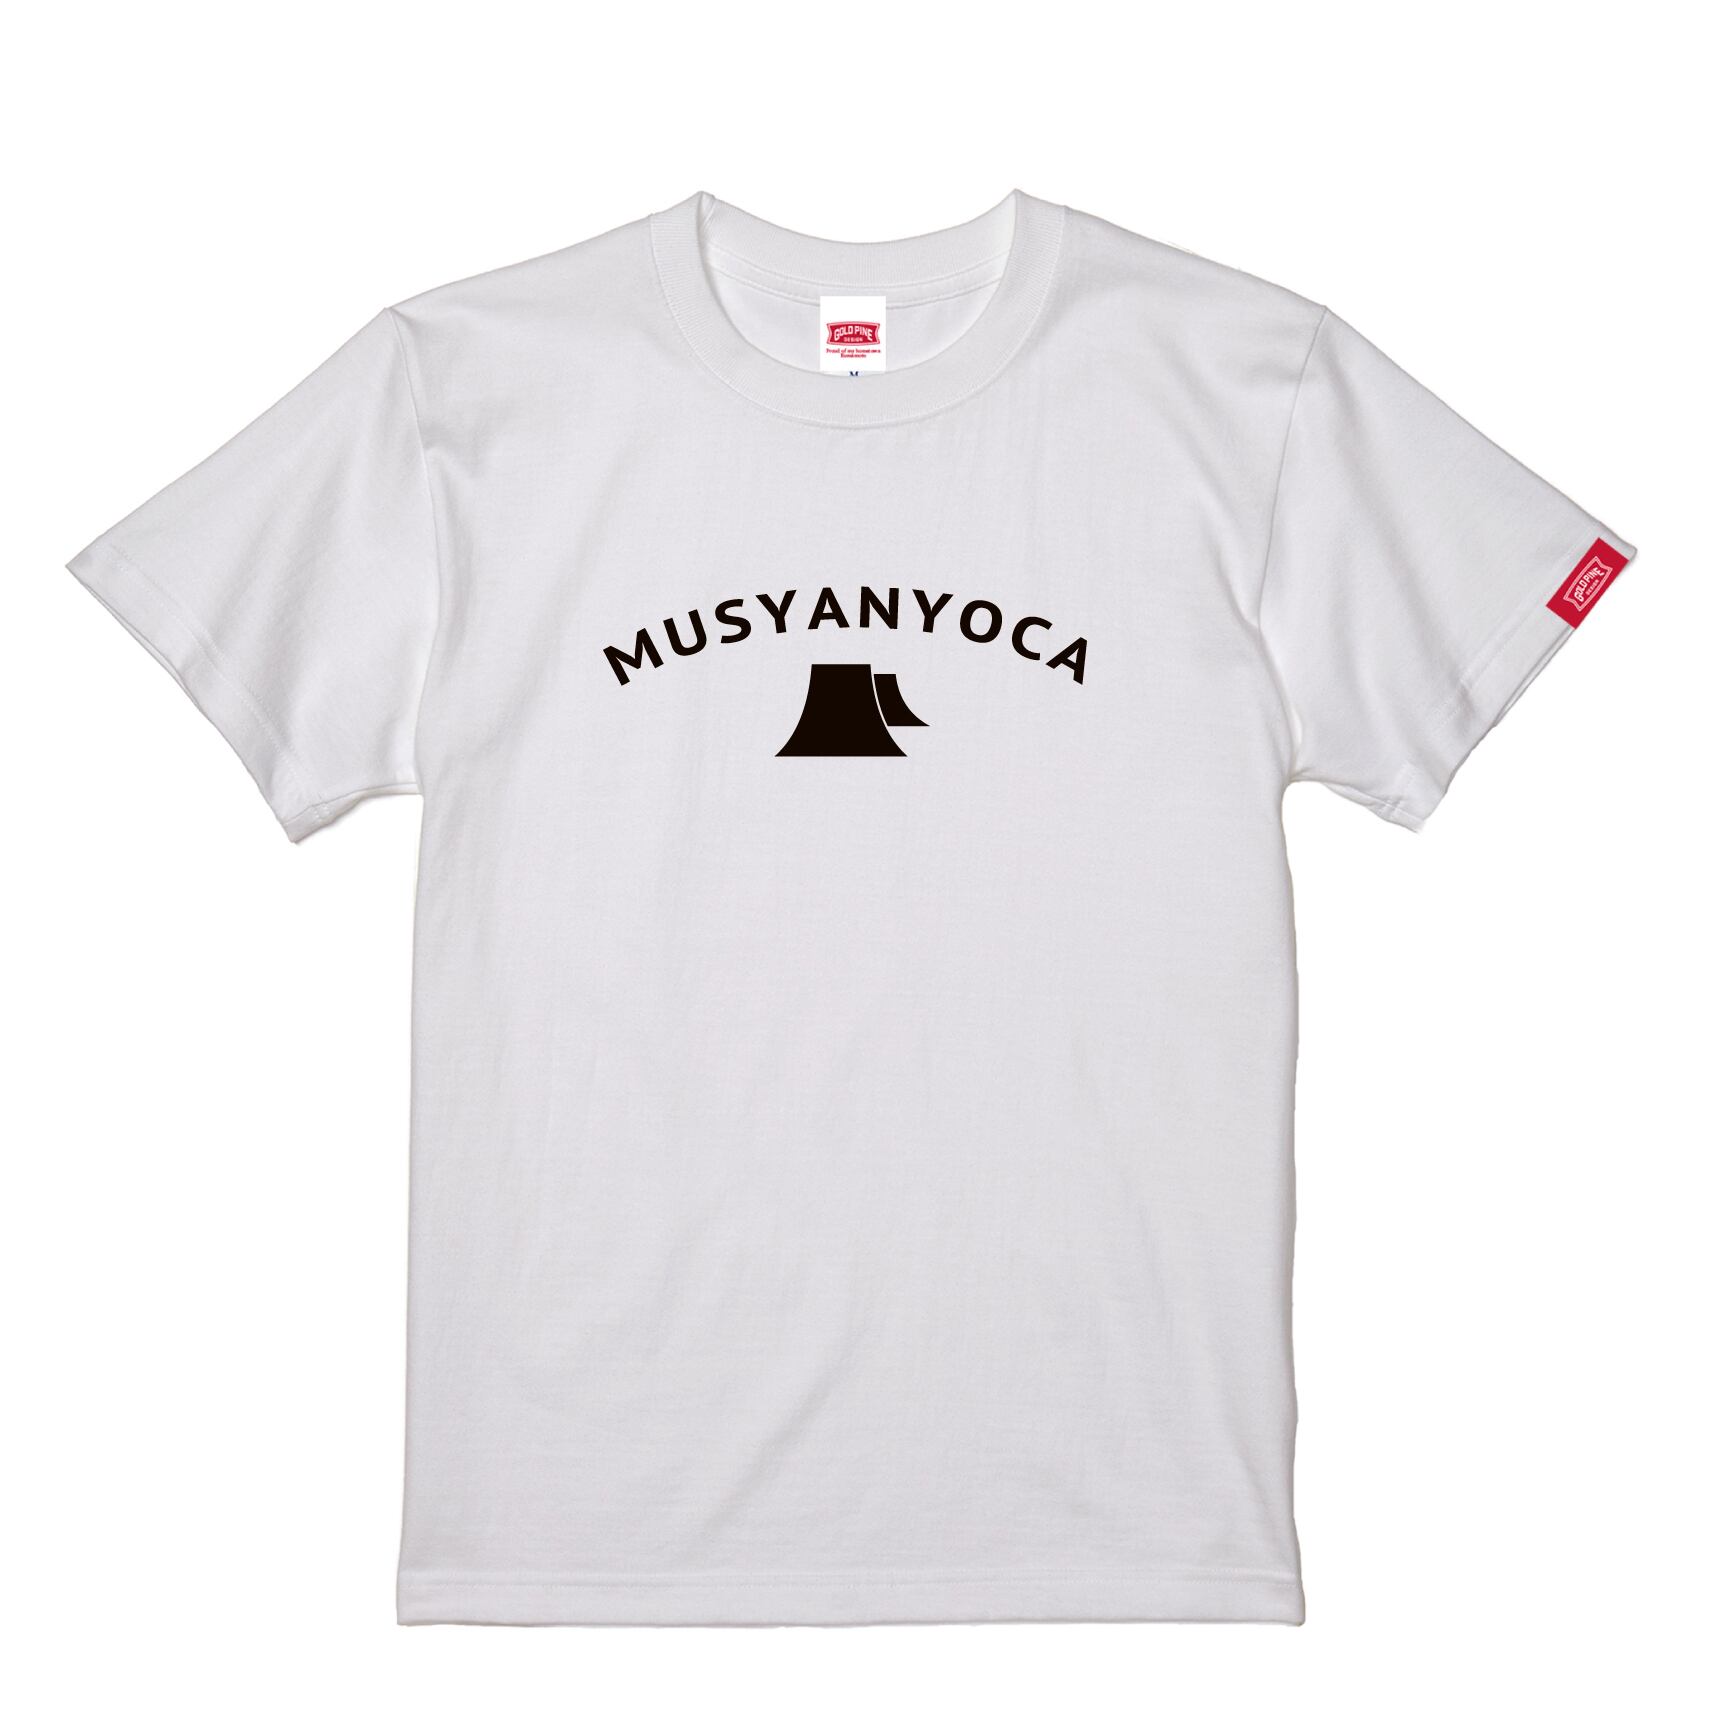 MUSYANYOCA-Tshirt【Adult】White